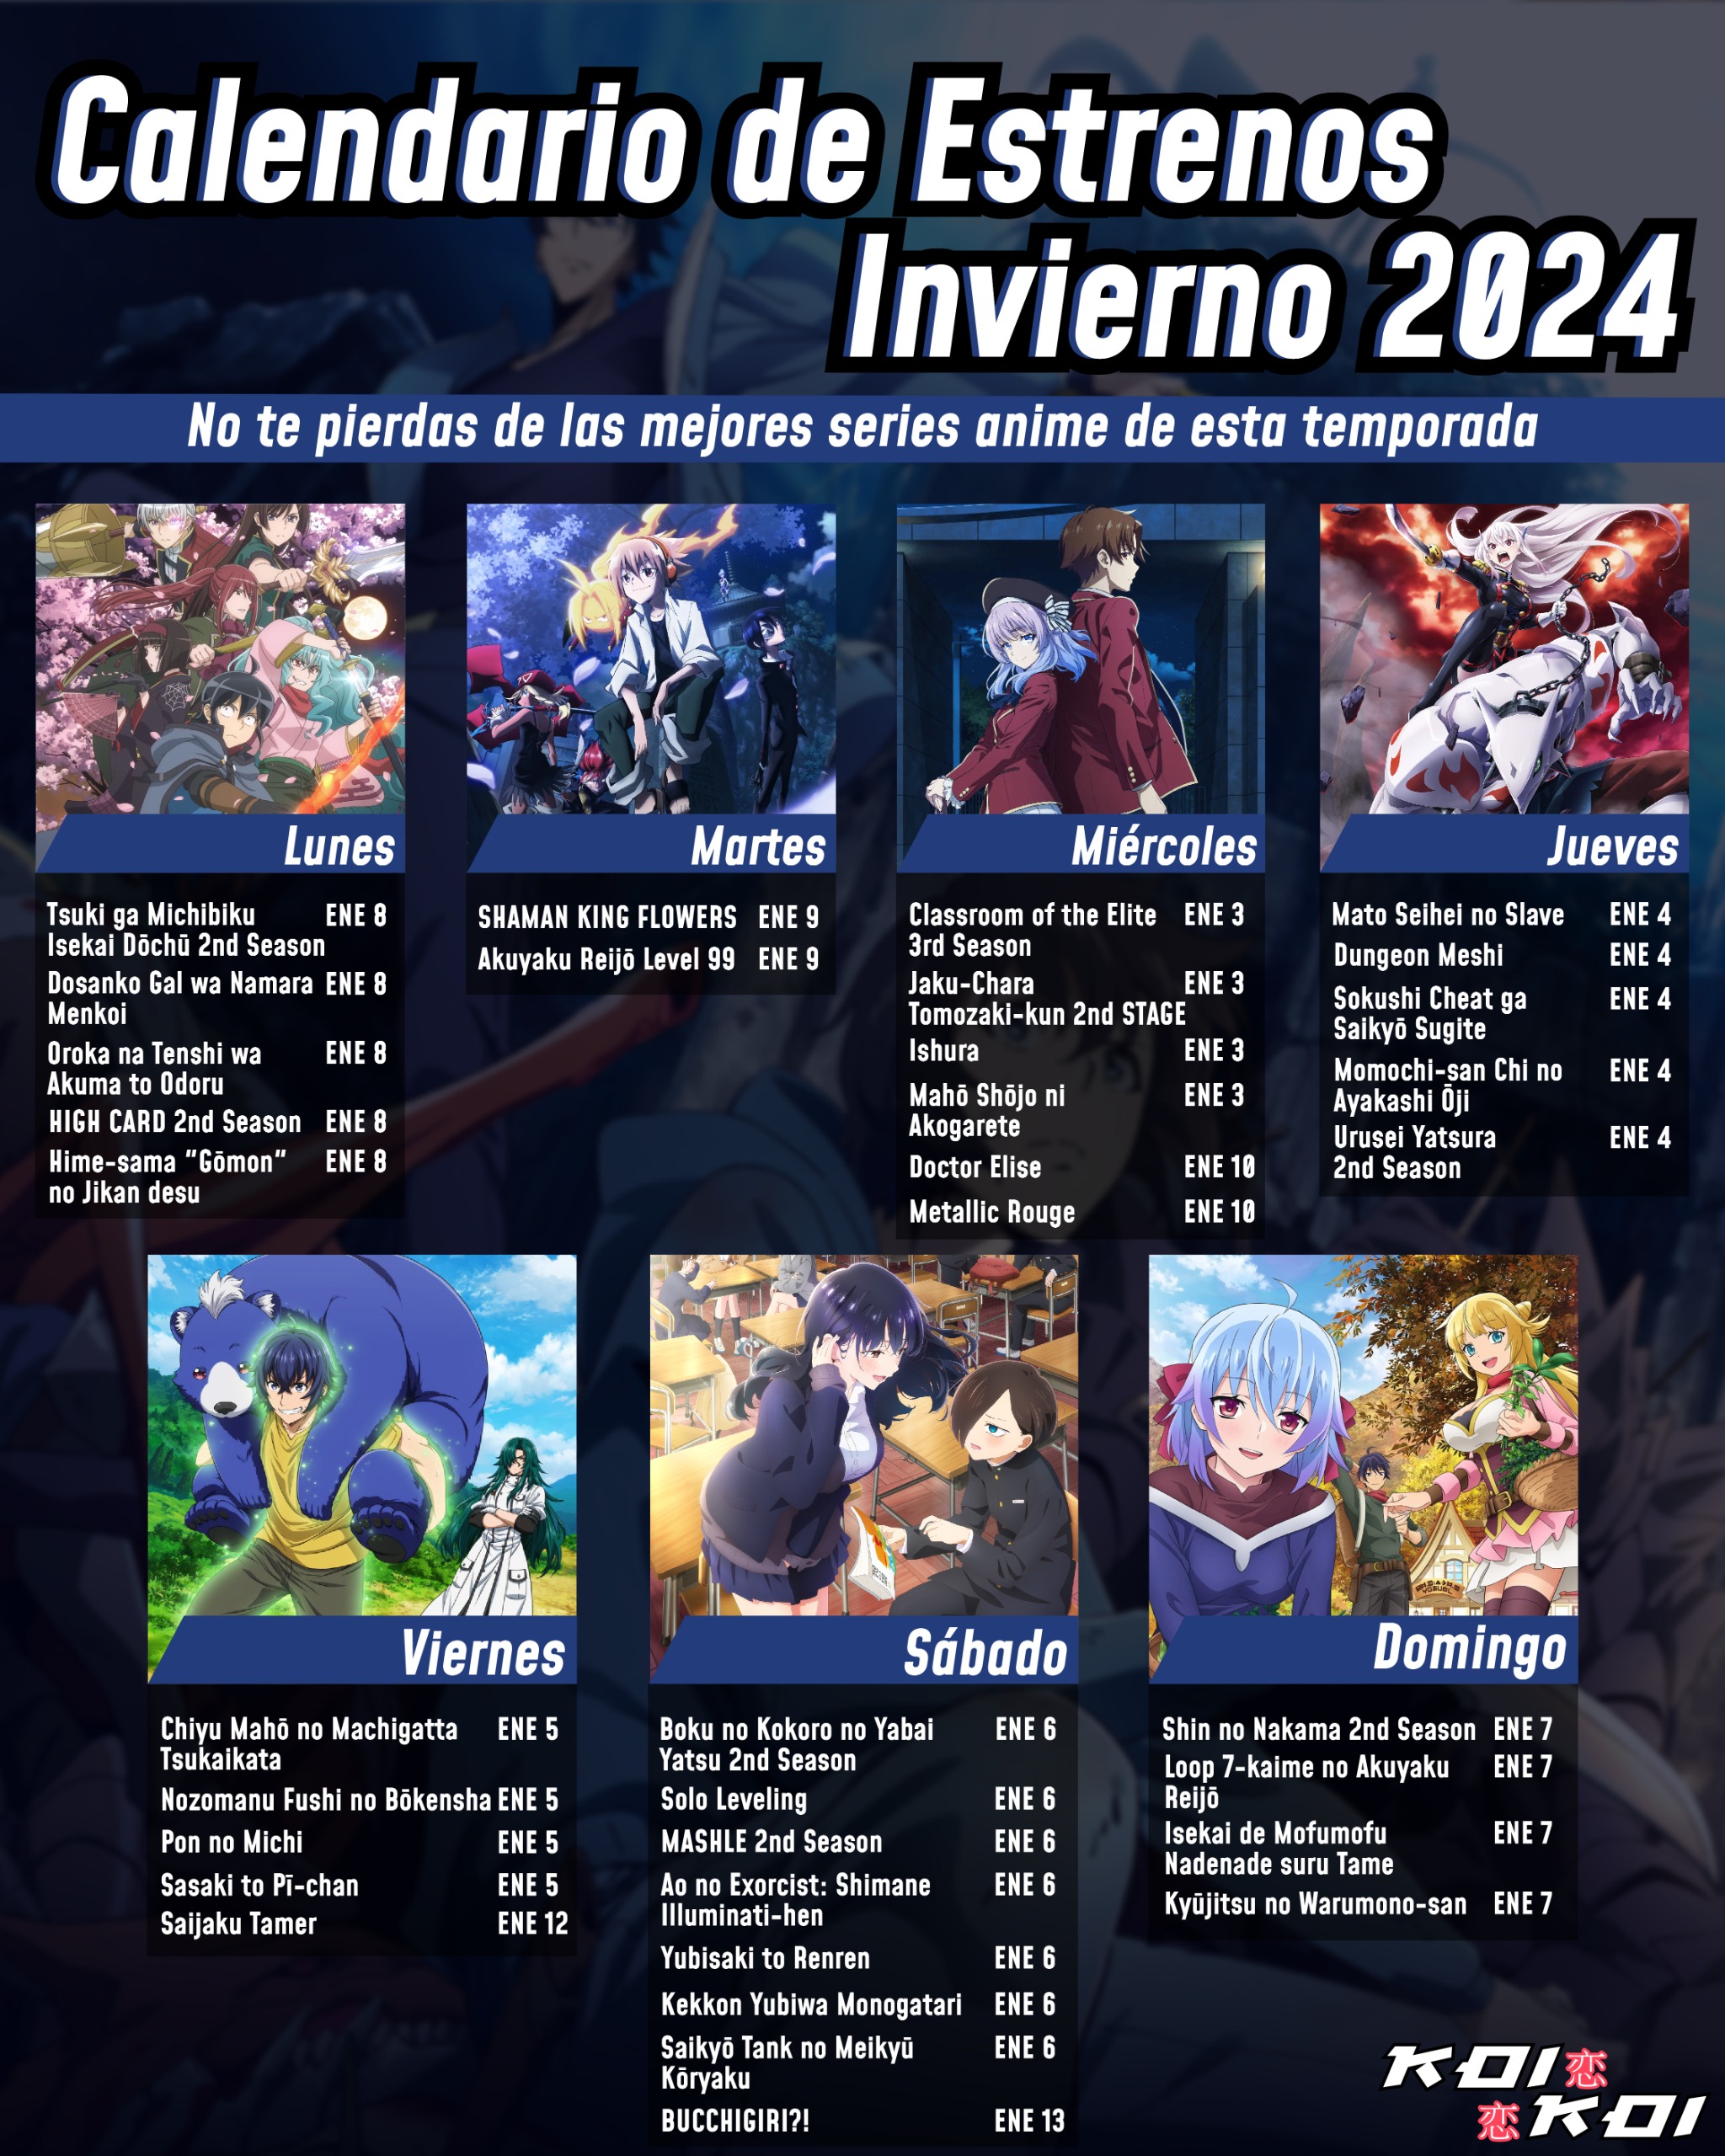 KOI KOI on X: ¡Prepárate para la Temporada Anime Primavera 2022